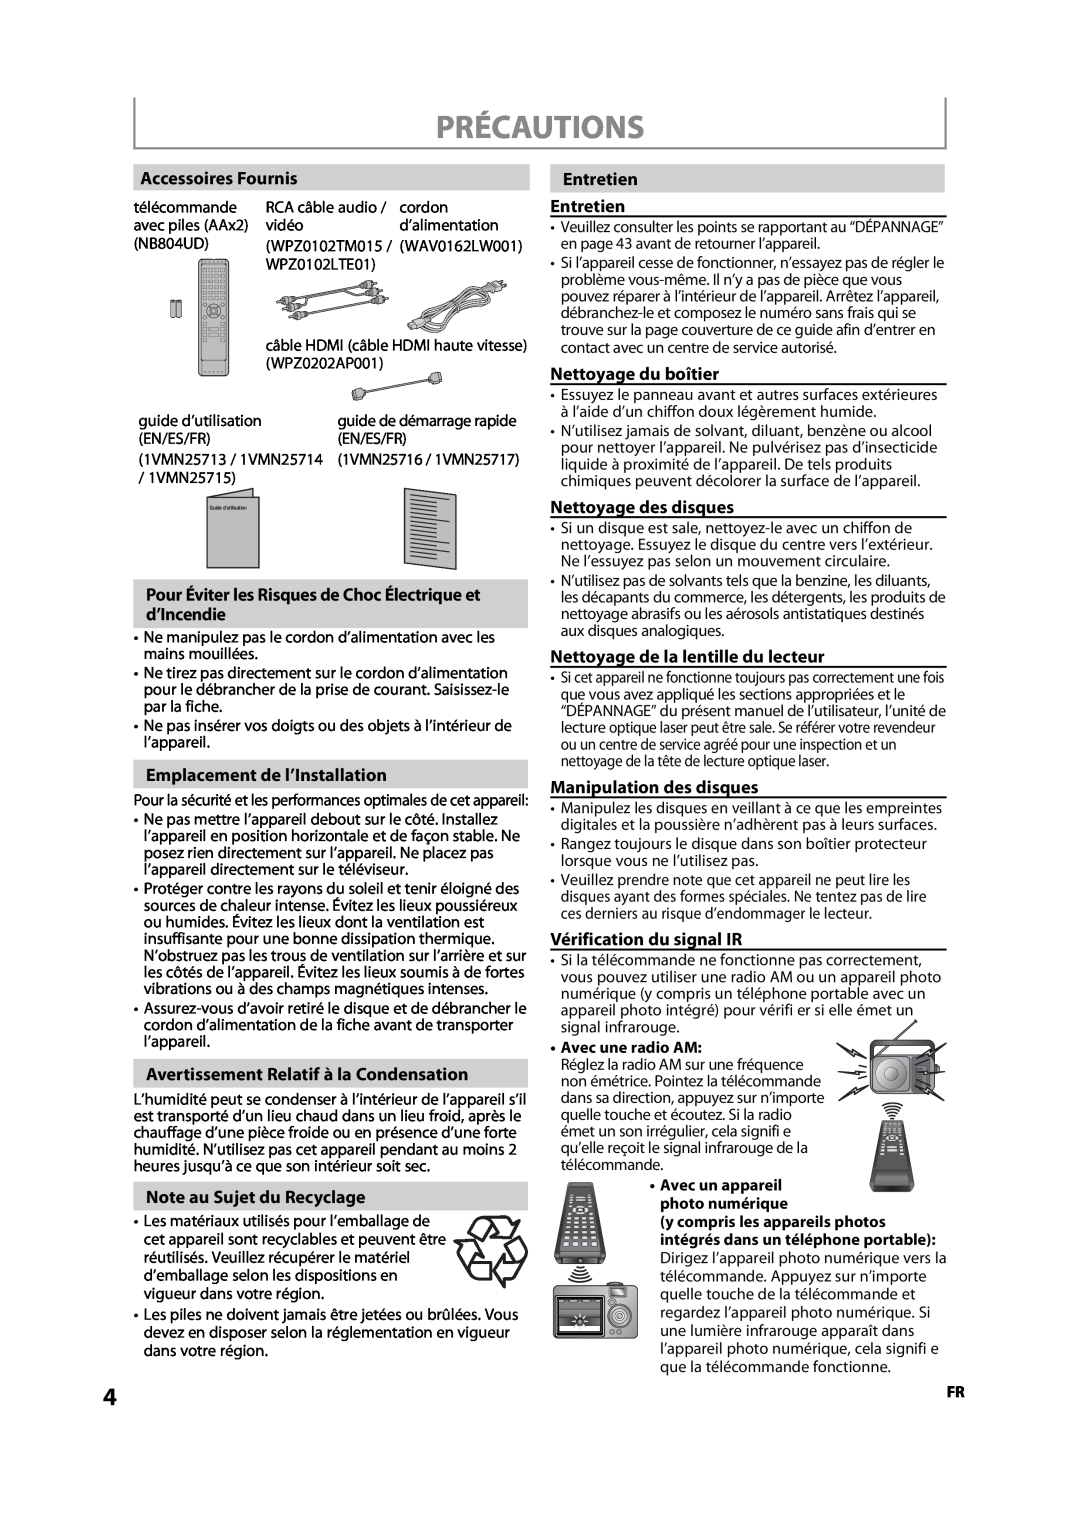 Sylvania NB500SL9 owner manual Précautions, Accessoires Fournis, Pour Éviter les Risques de Choc Électrique et d’Incendie 